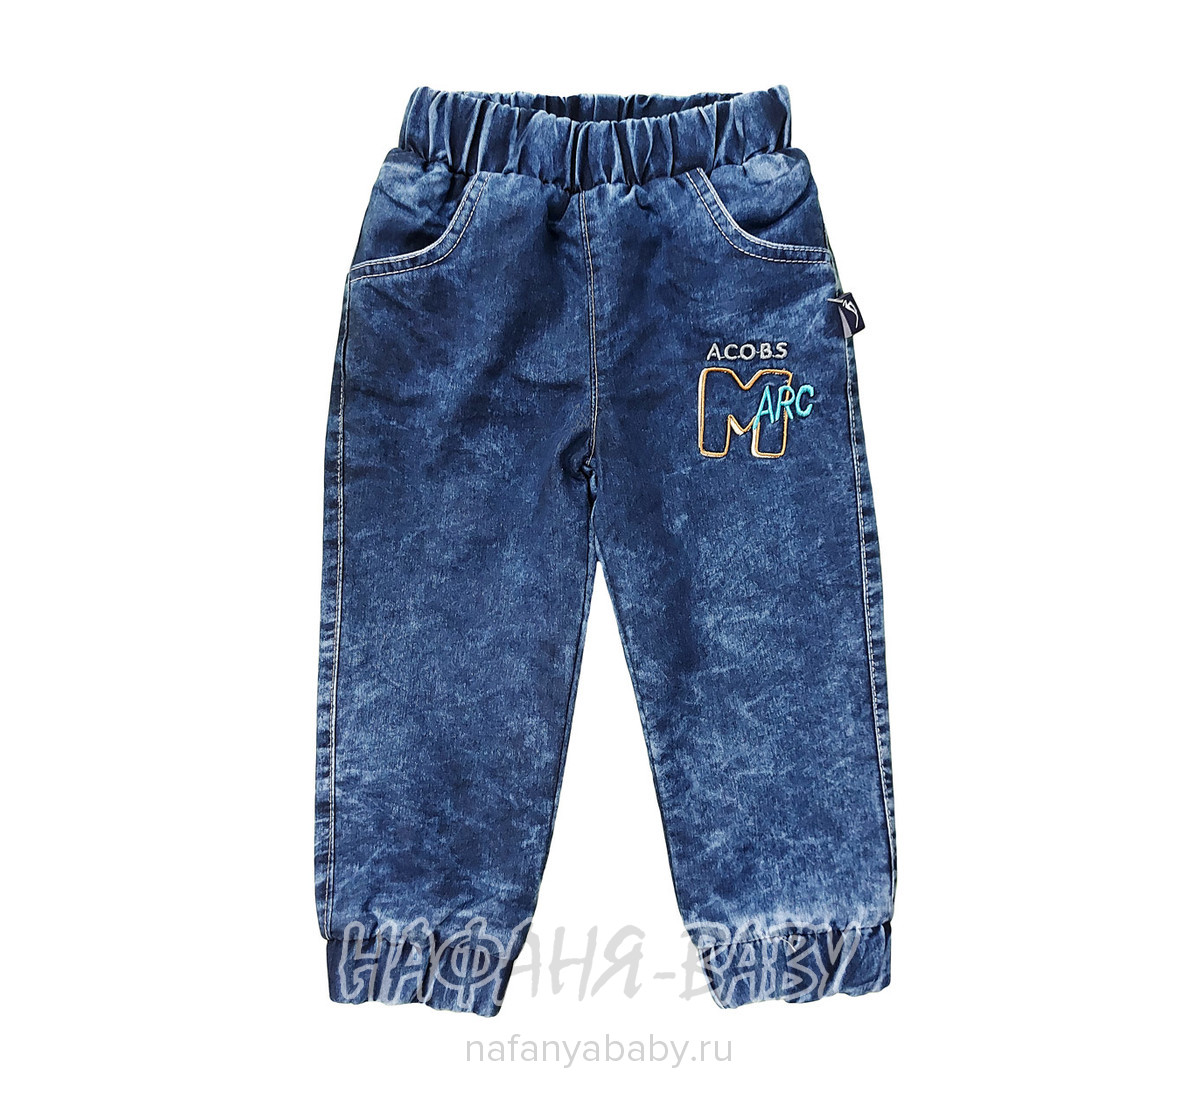 Детские теплые джинсы AKIRA арт: 2618, 1-4 года, оптом Турция